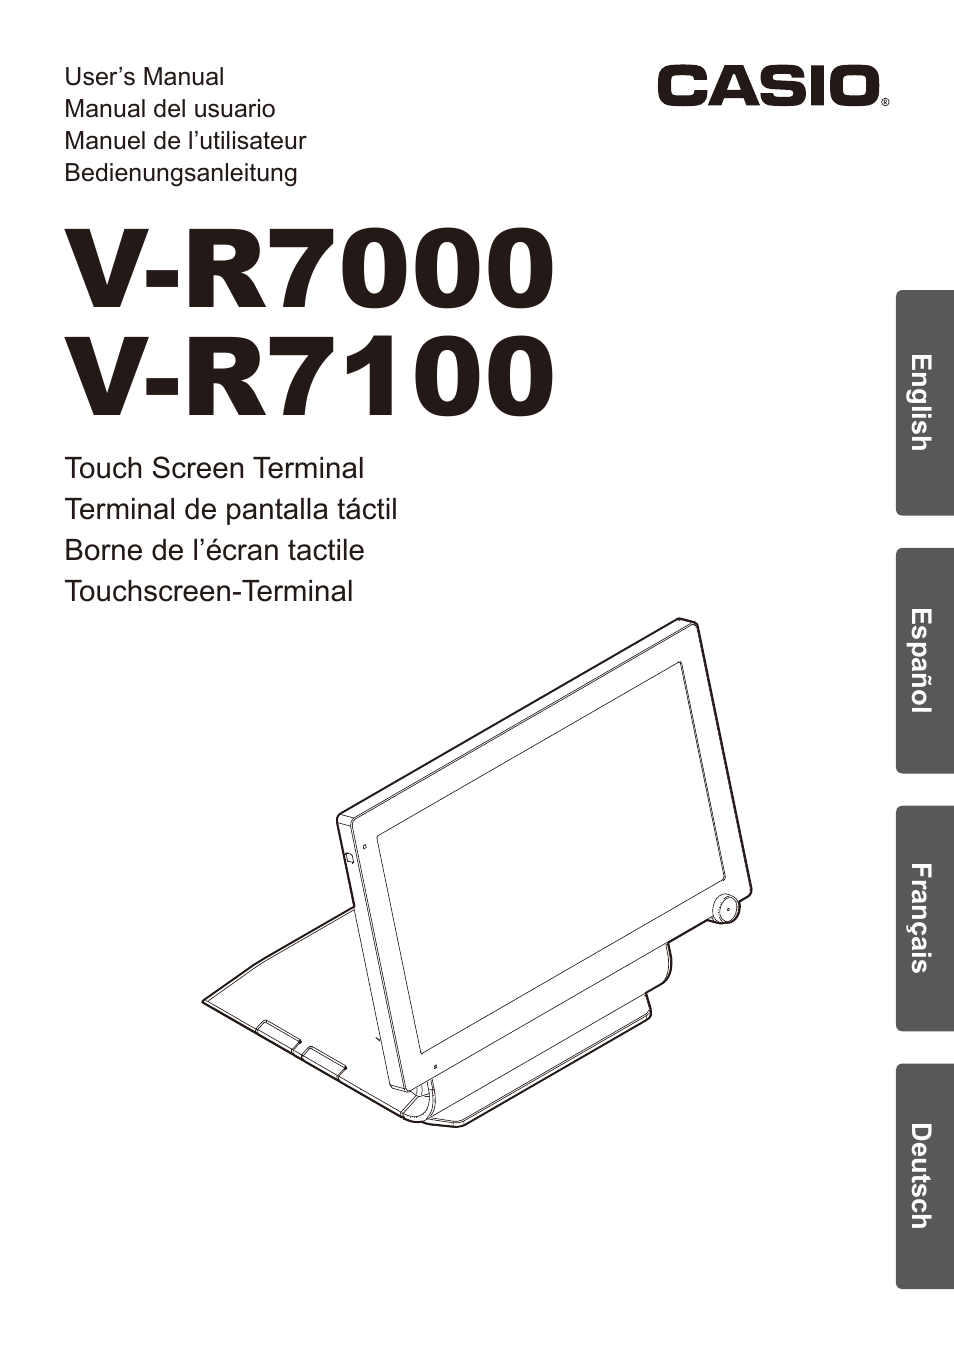 Casio V-R7000 Manuel d'utilisation | Pages: 36